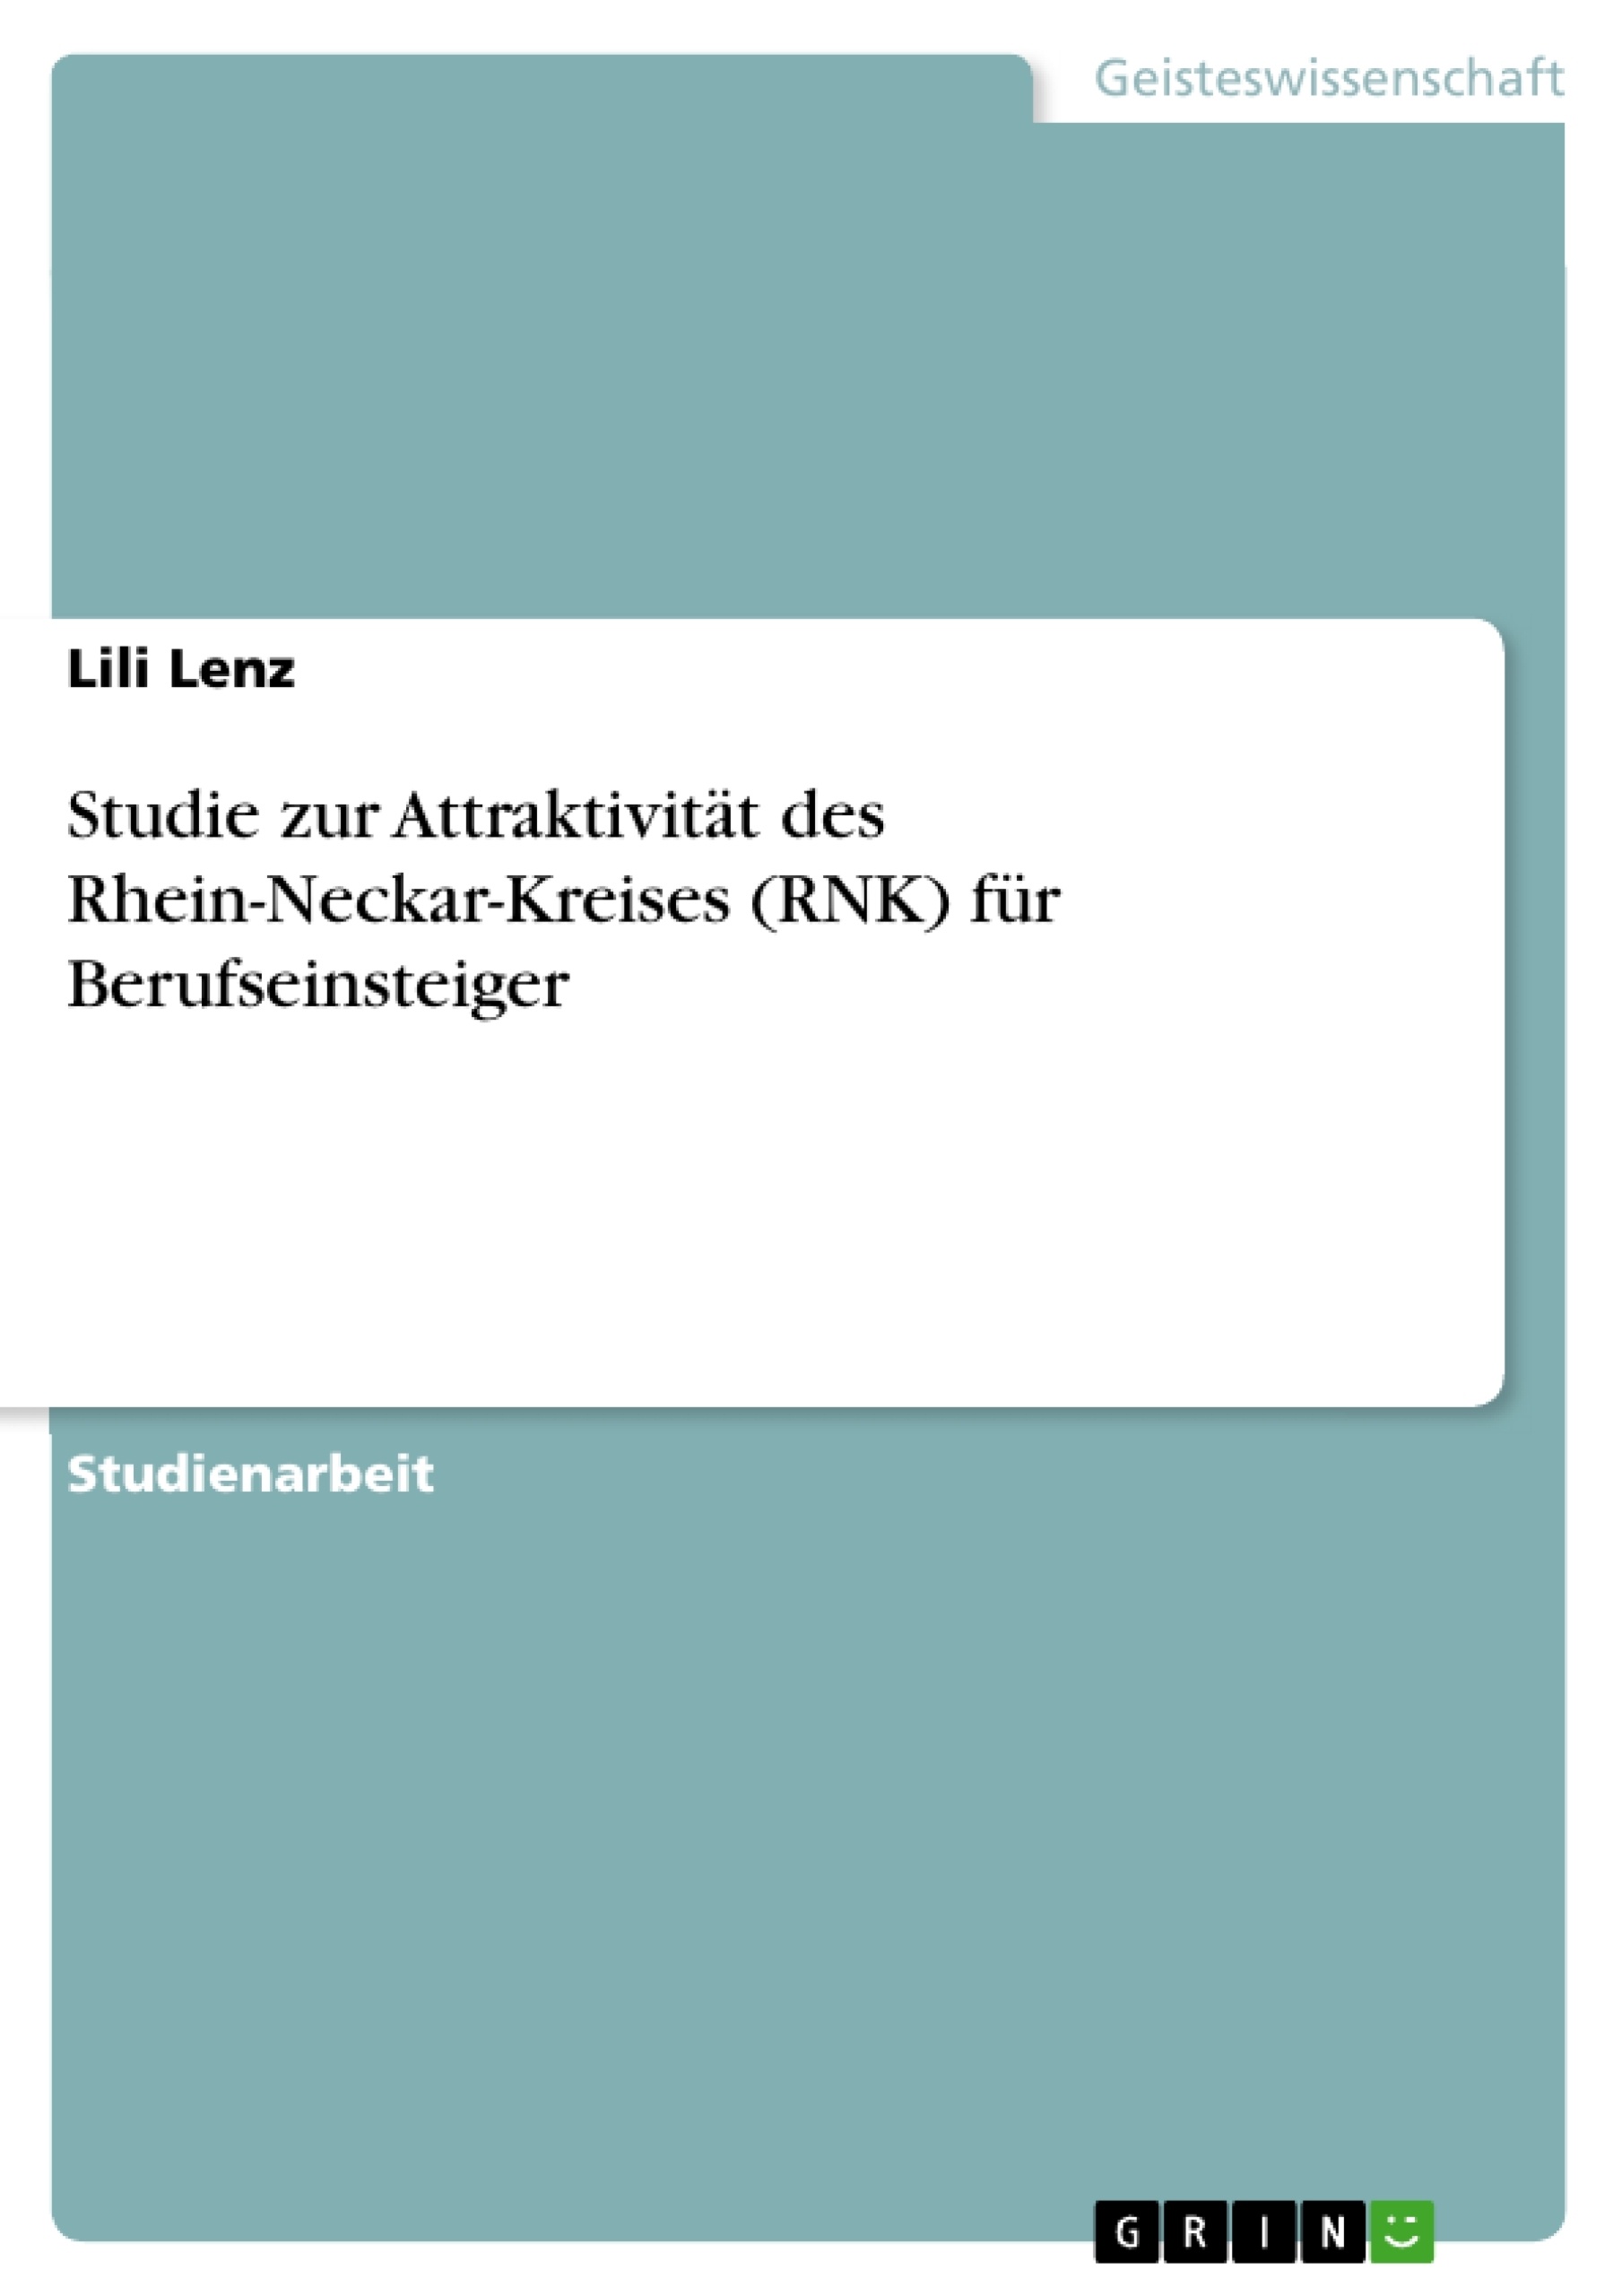 Título: Studie zur Attraktivität des Rhein-Neckar-Kreises (RNK) für Berufseinsteiger